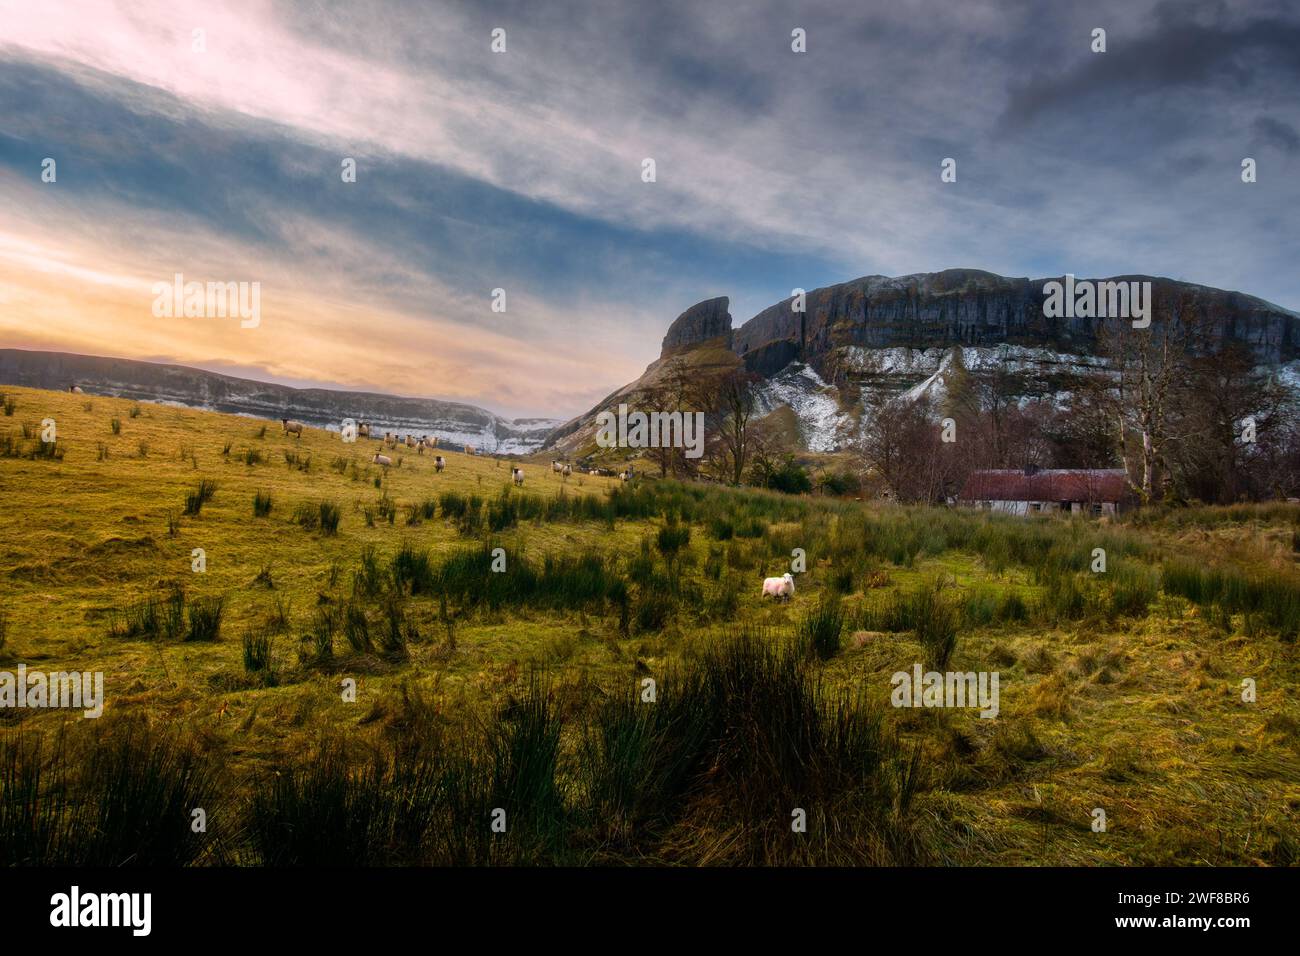 Ireland countryside landscape Stock Photo